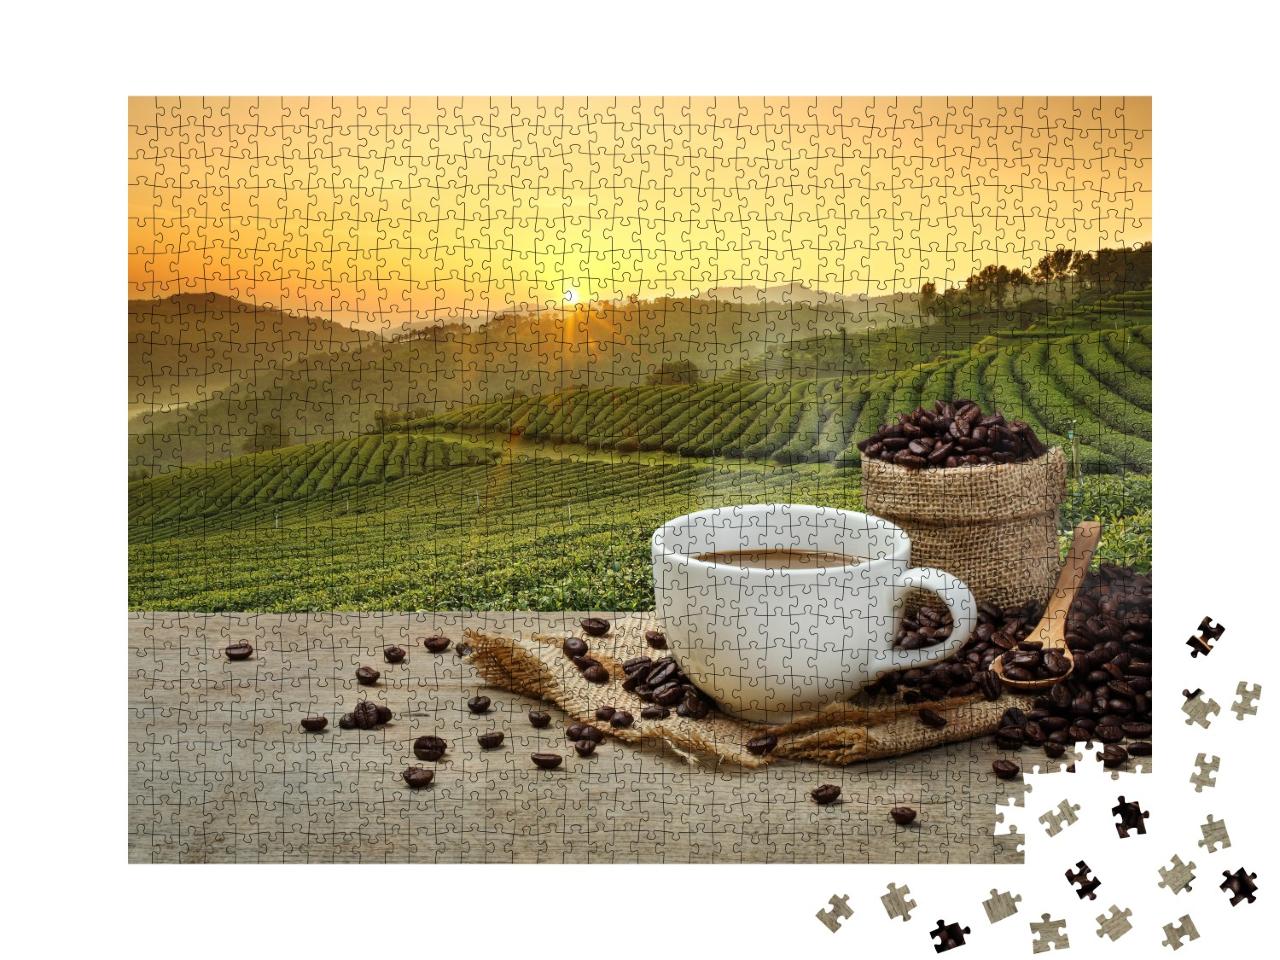 Puzzle de 1000 pièces « Café fraîchement infusé devant la plantation de café »